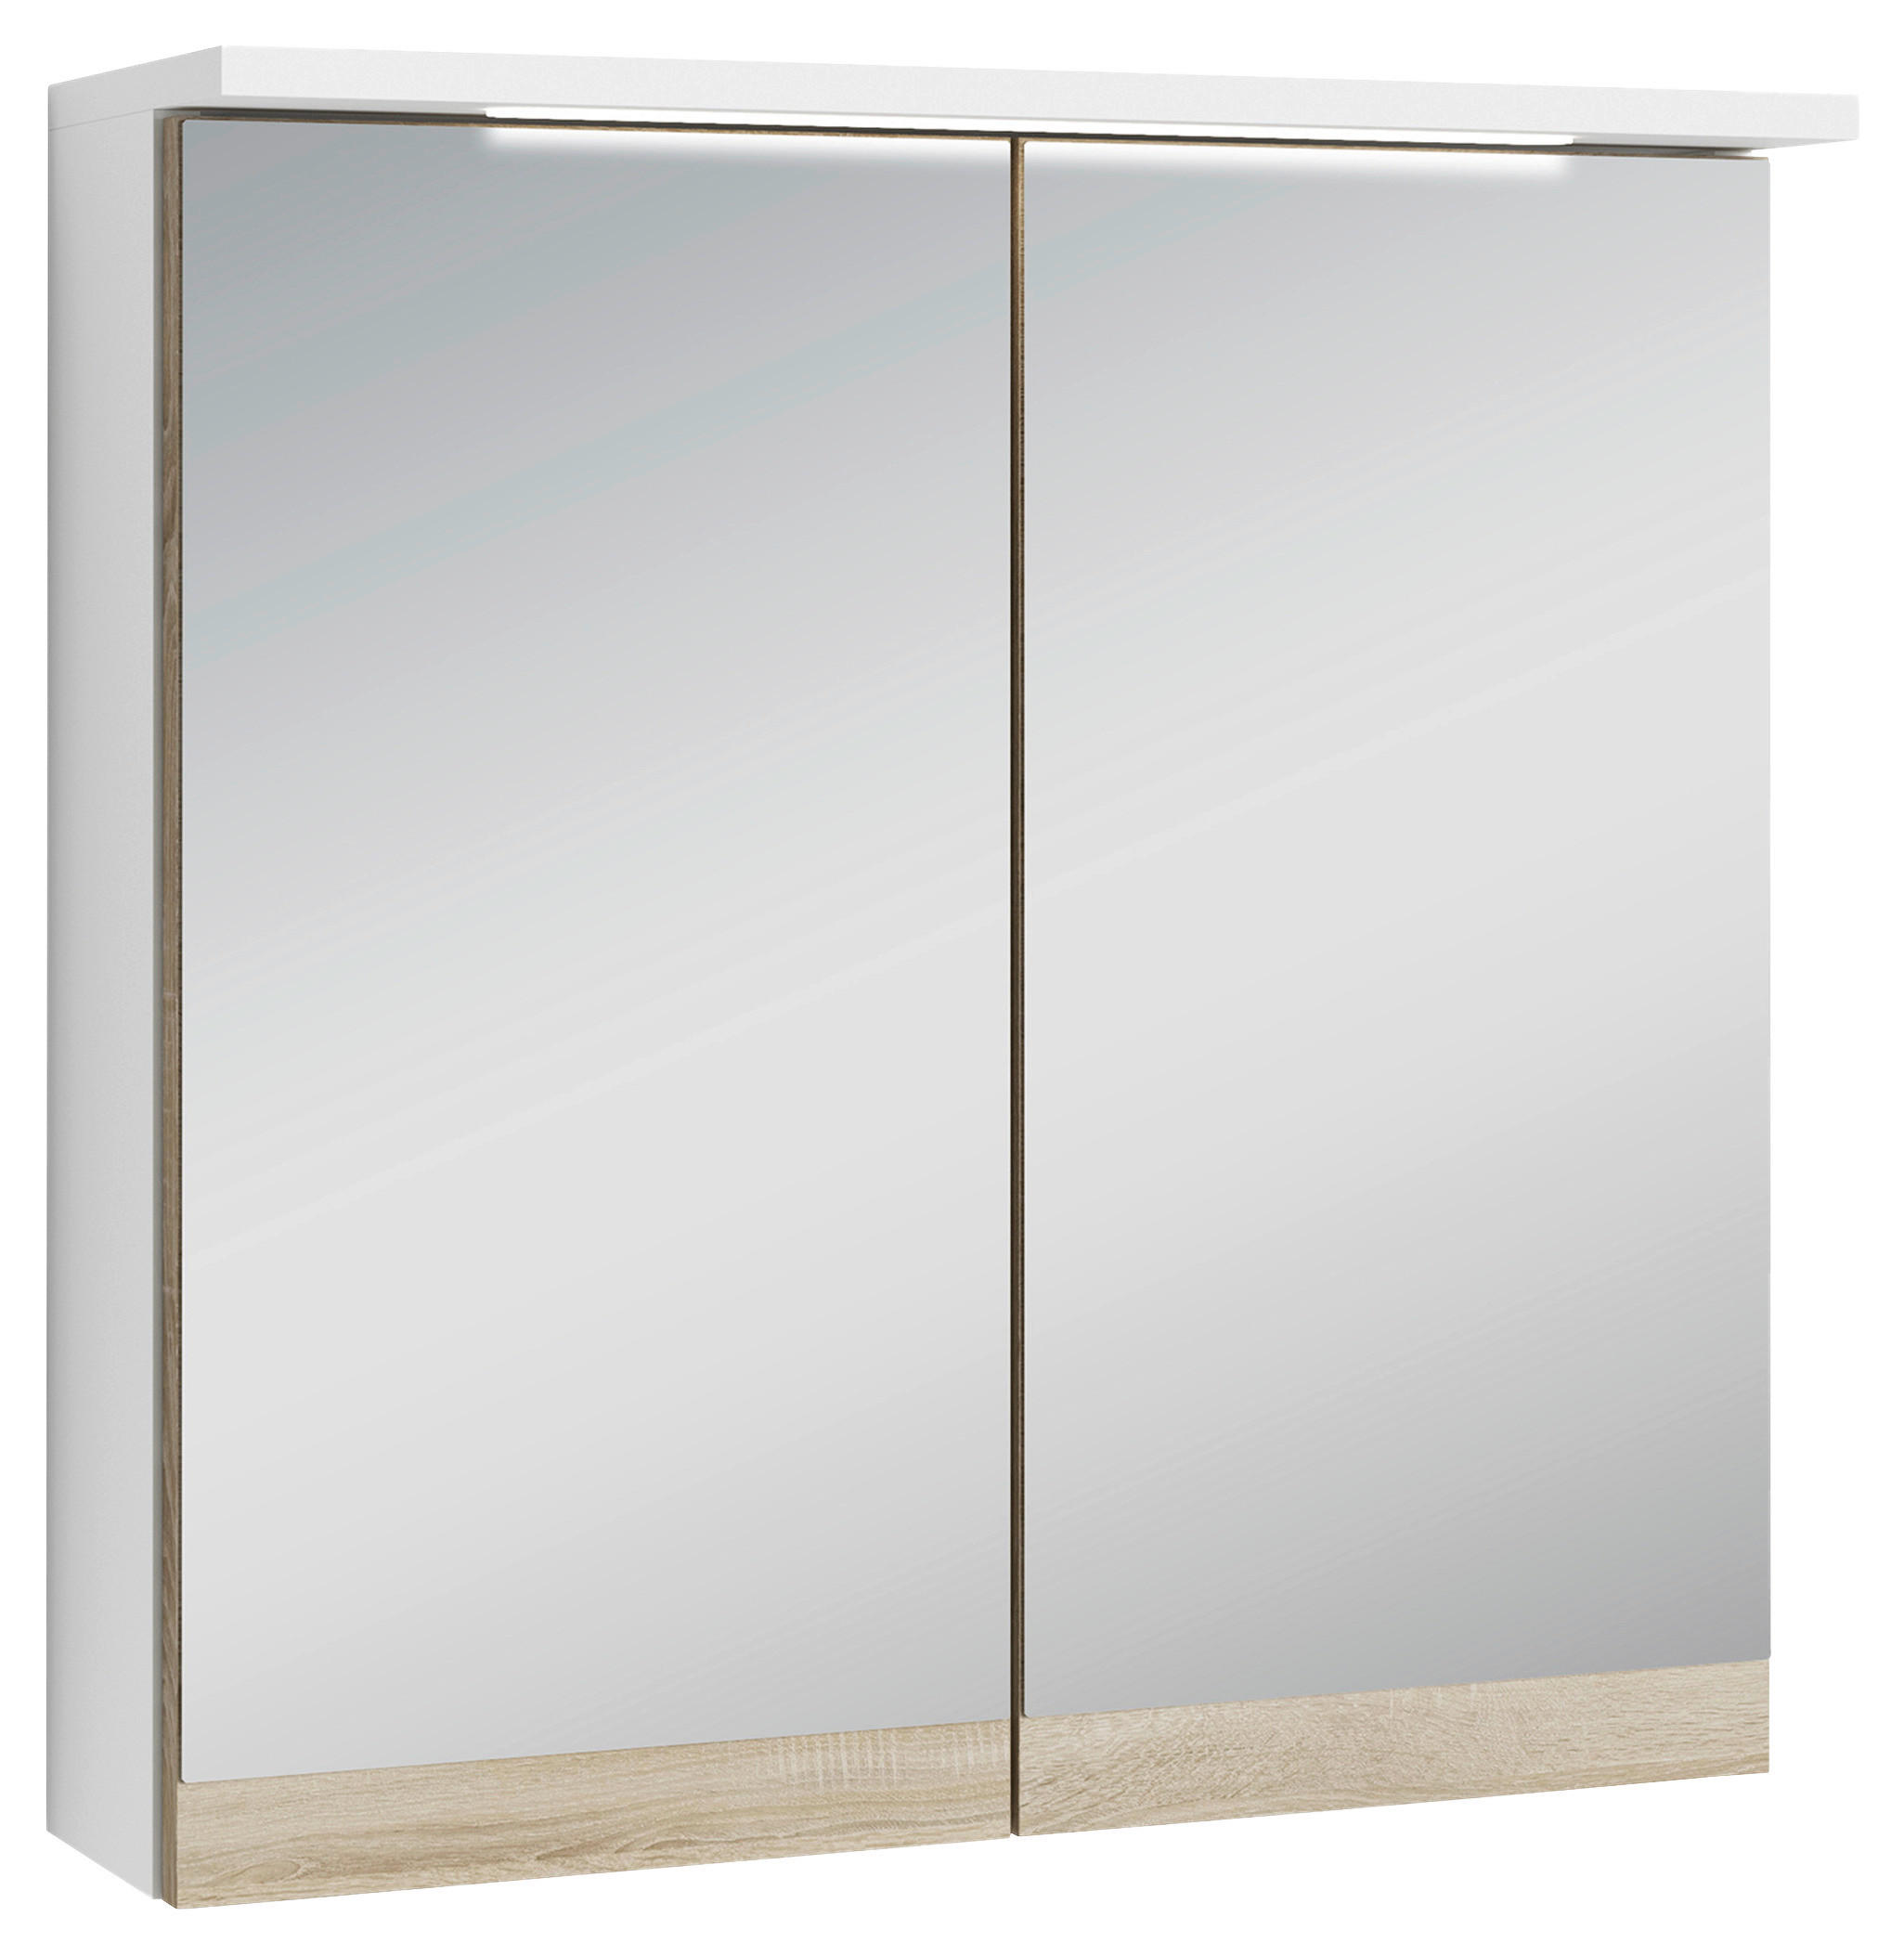 SPIEGELSCHRANK 60/60/20 cm  - Weiß/Sonoma Eiche, MODERN, Glas/Holzwerkstoff (60/60/20cm) - MID.YOU